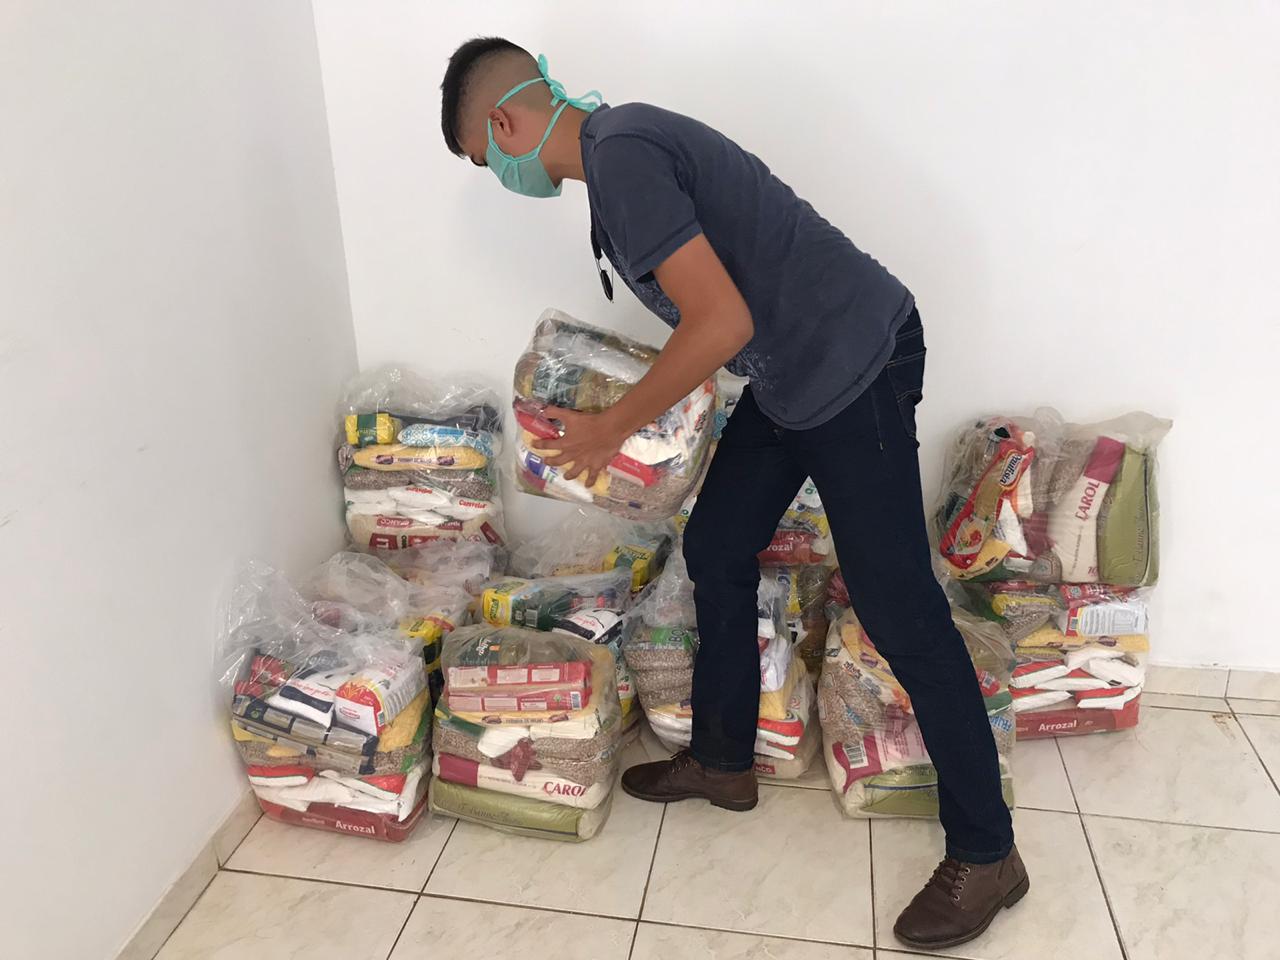 Coronavírus: Após entregar mais de 880 cestas básicas, Prefeitura de Itararé (SP) suspende distribuição até chegada de novos alimentos